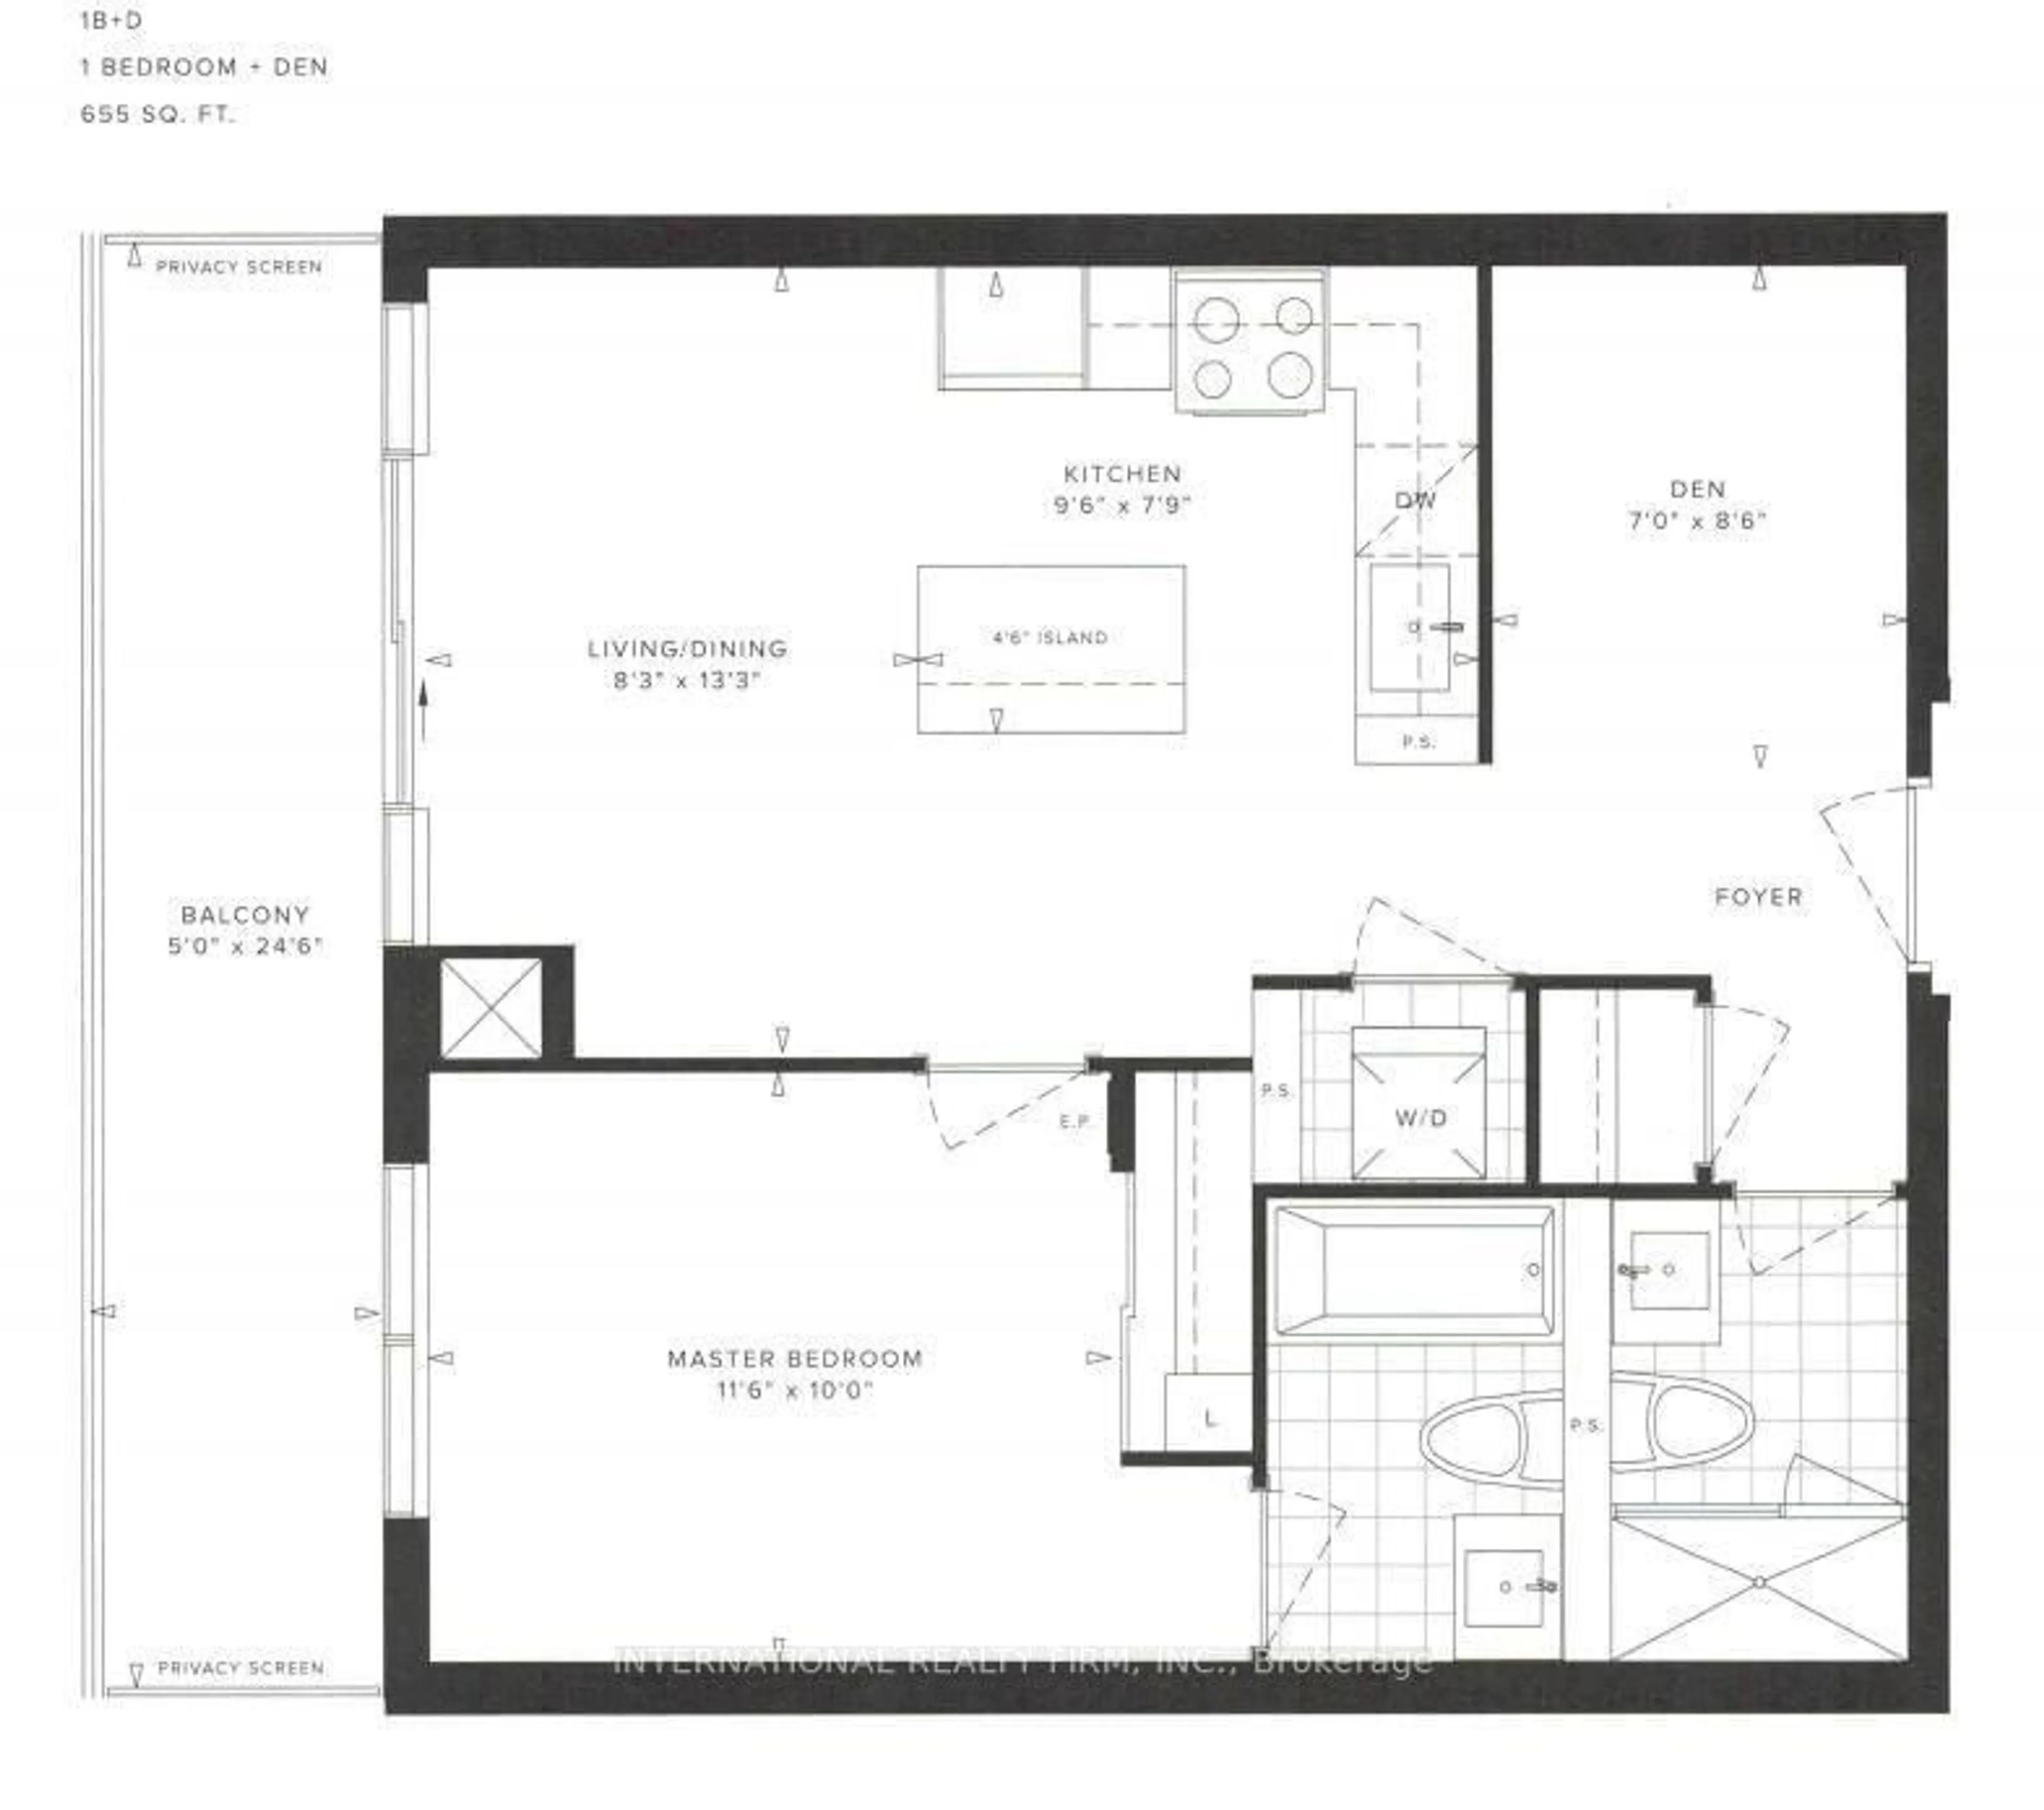 Floor plan for 4677 Glen Erin Dr #1608, Mississauga Ontario L5M 2E3